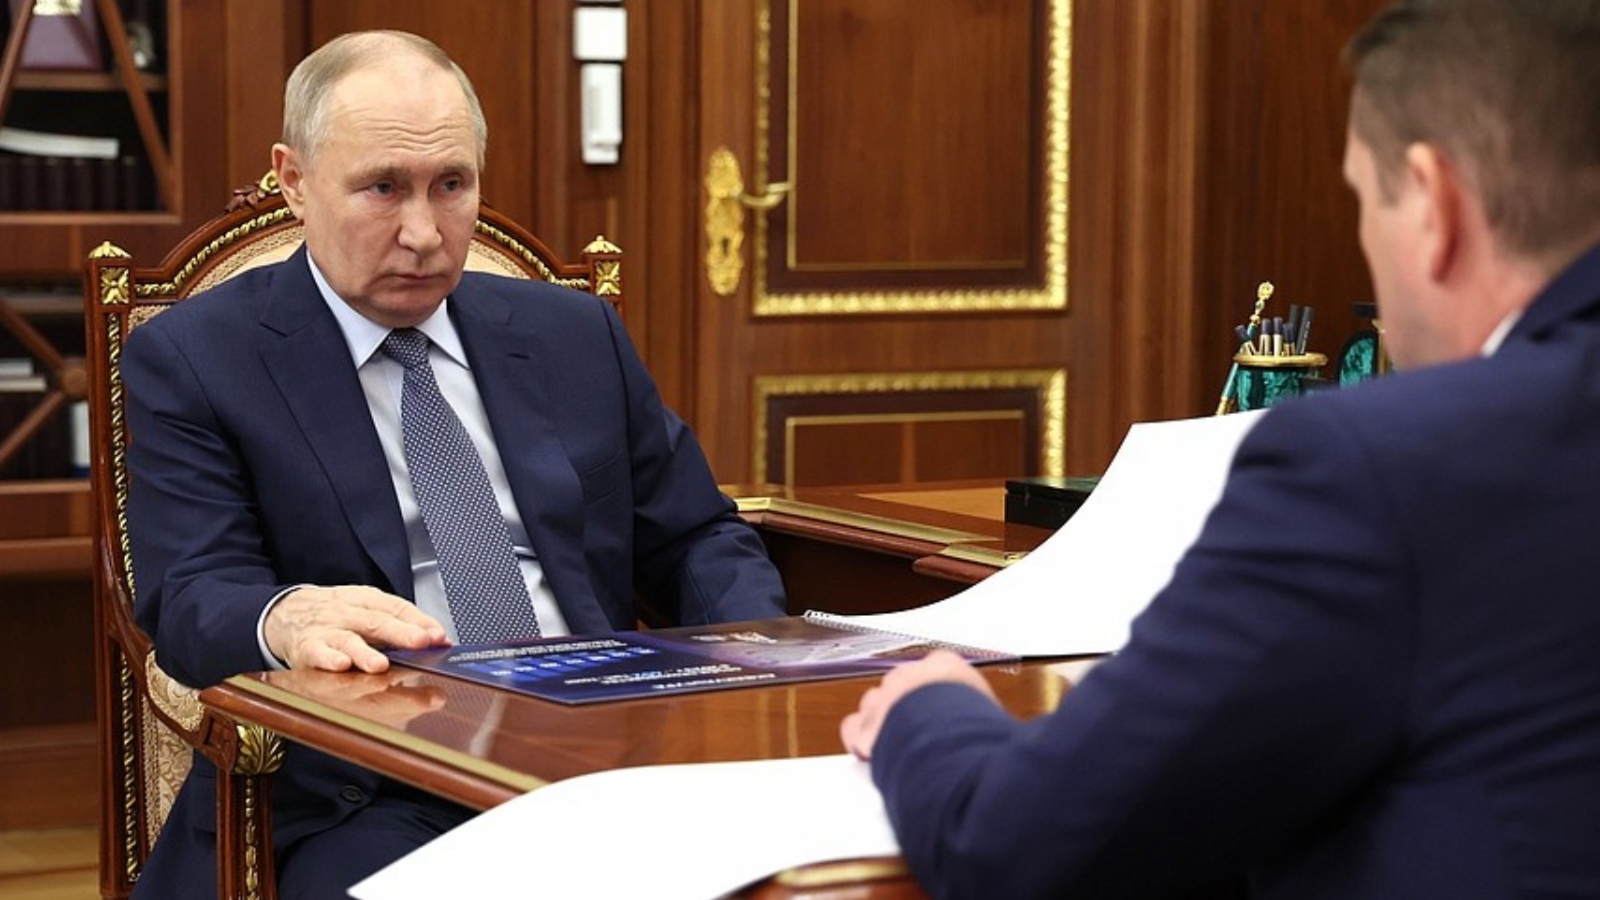 Шестаков пообещал Путину сдвинуть сроки «квот под киль» краболовов